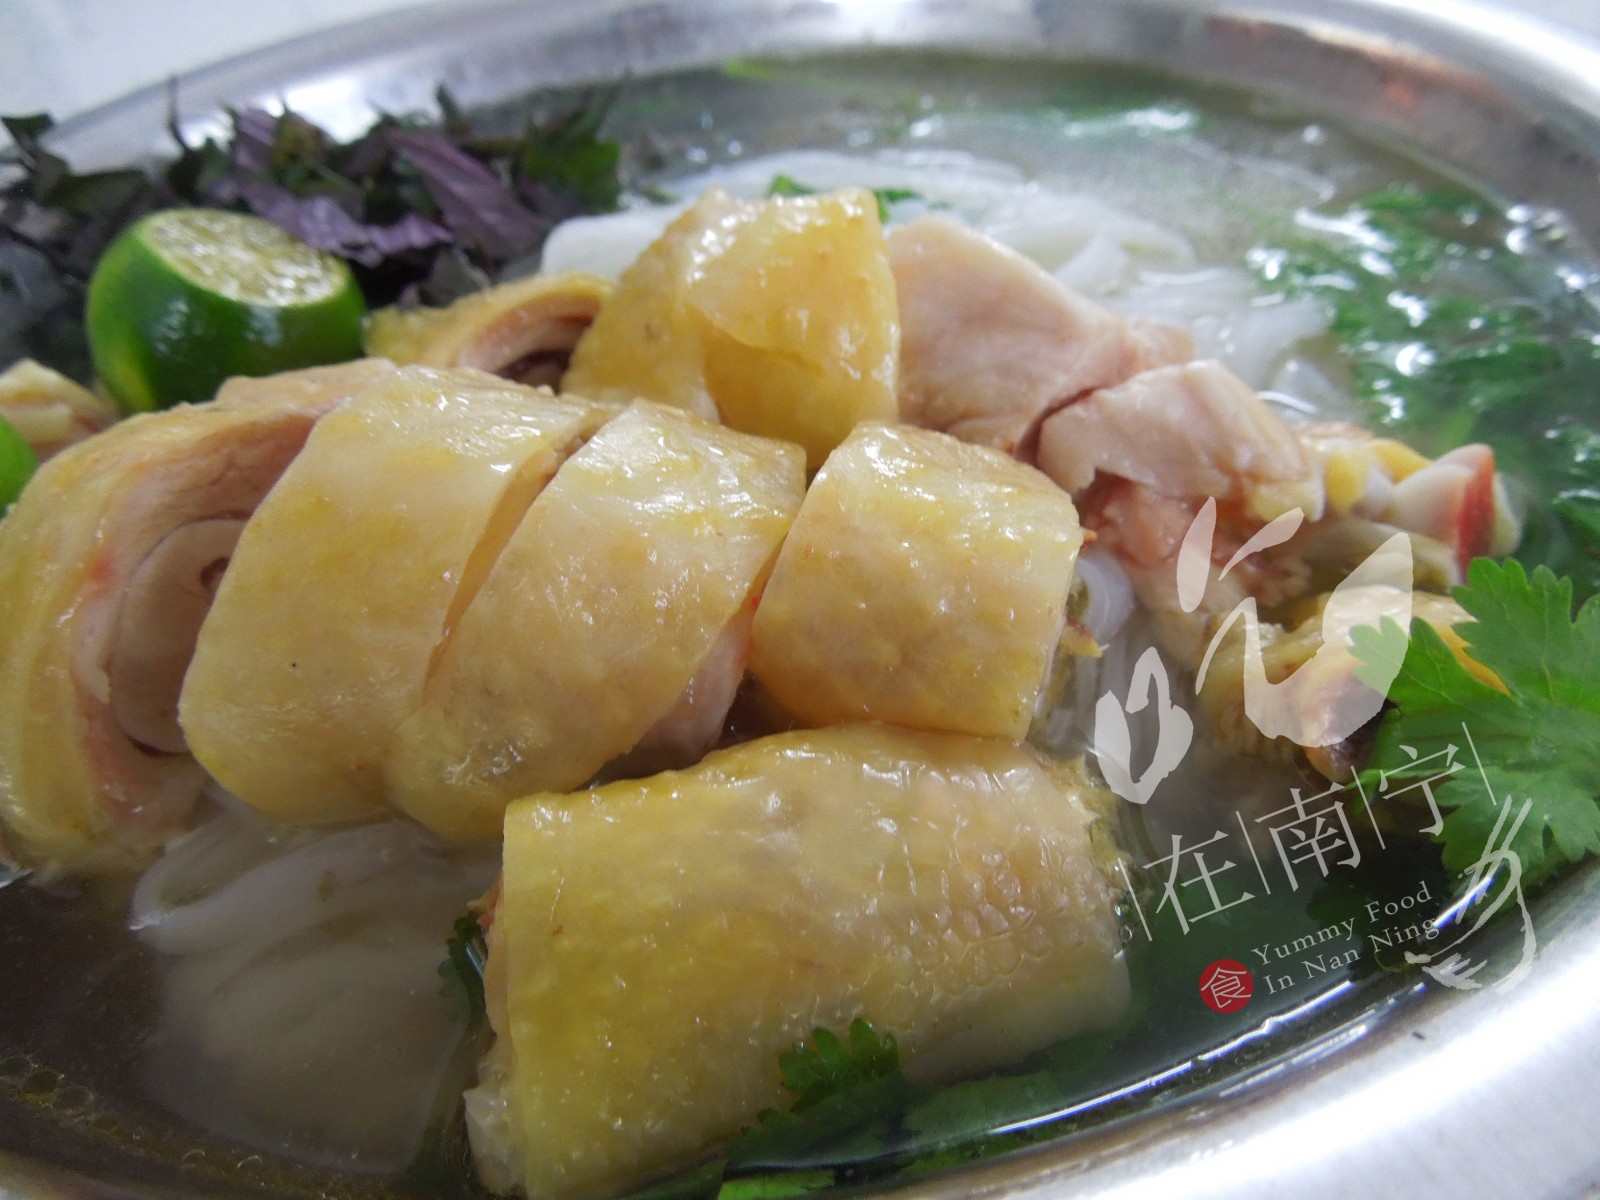 【巷口】越南外婆传的手艺,这家鸡肉粉真的是越南味!土鸡!肉多!